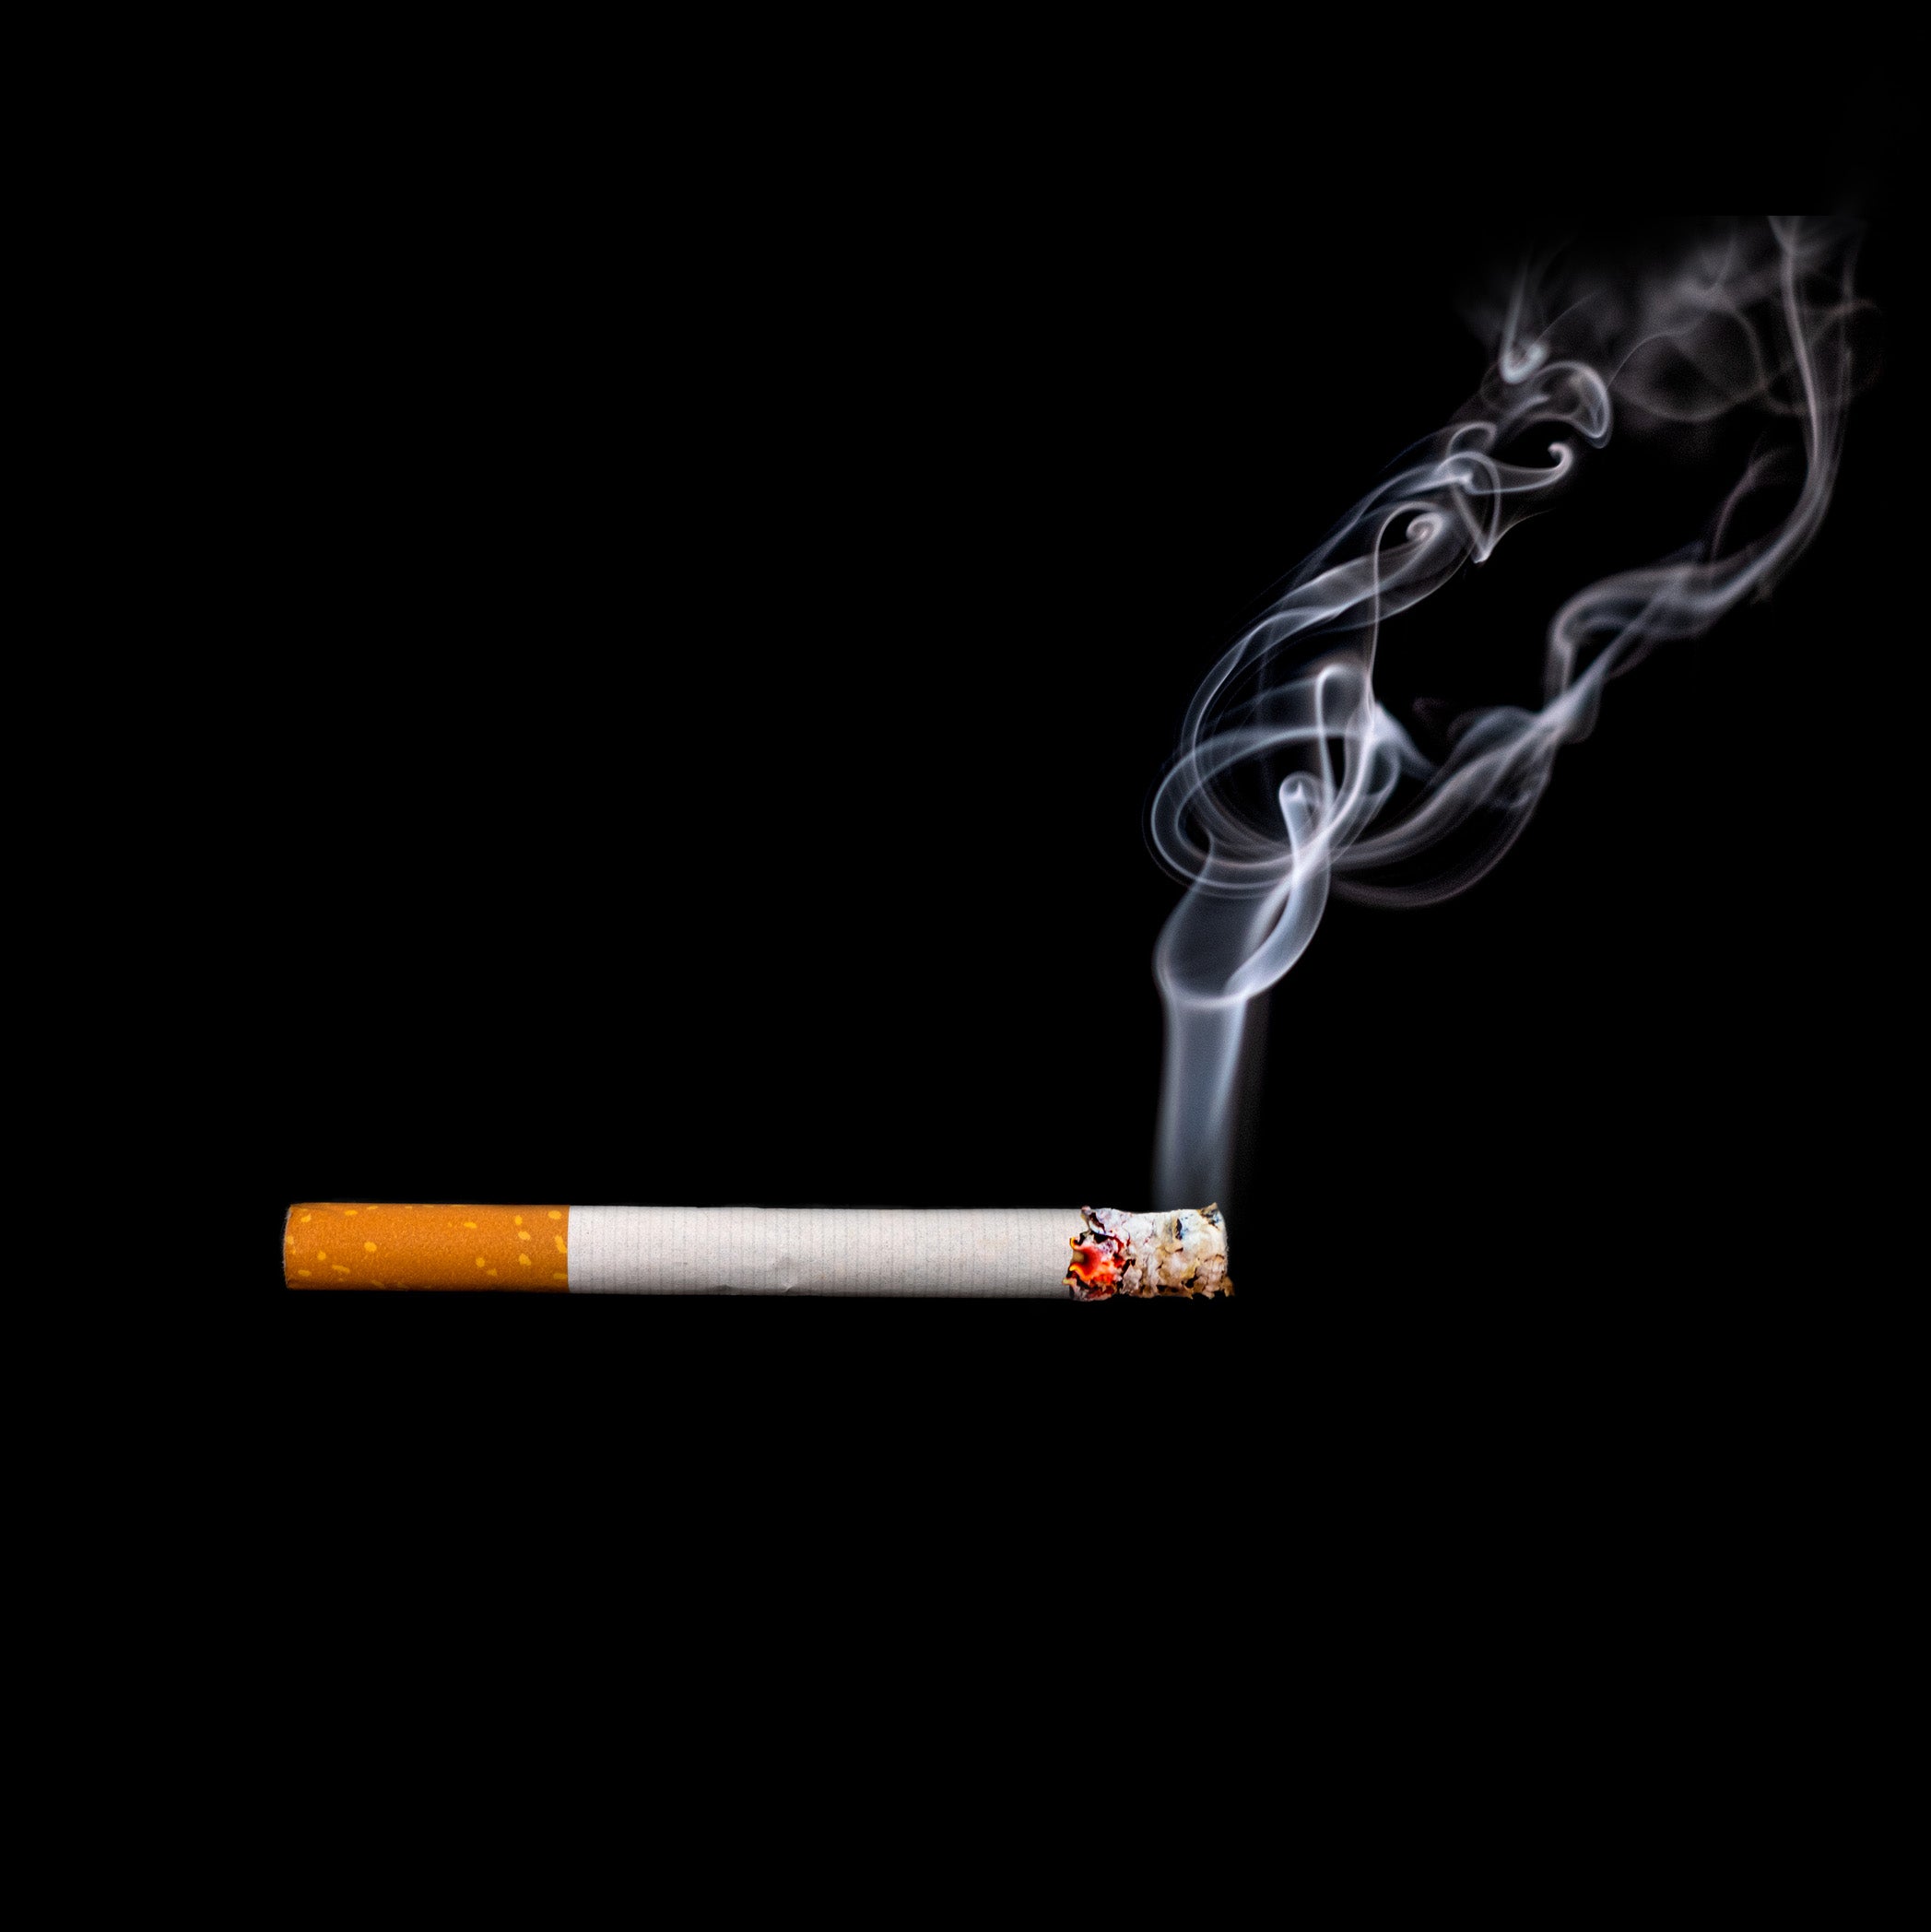 煙が出ているタバコのイメージ